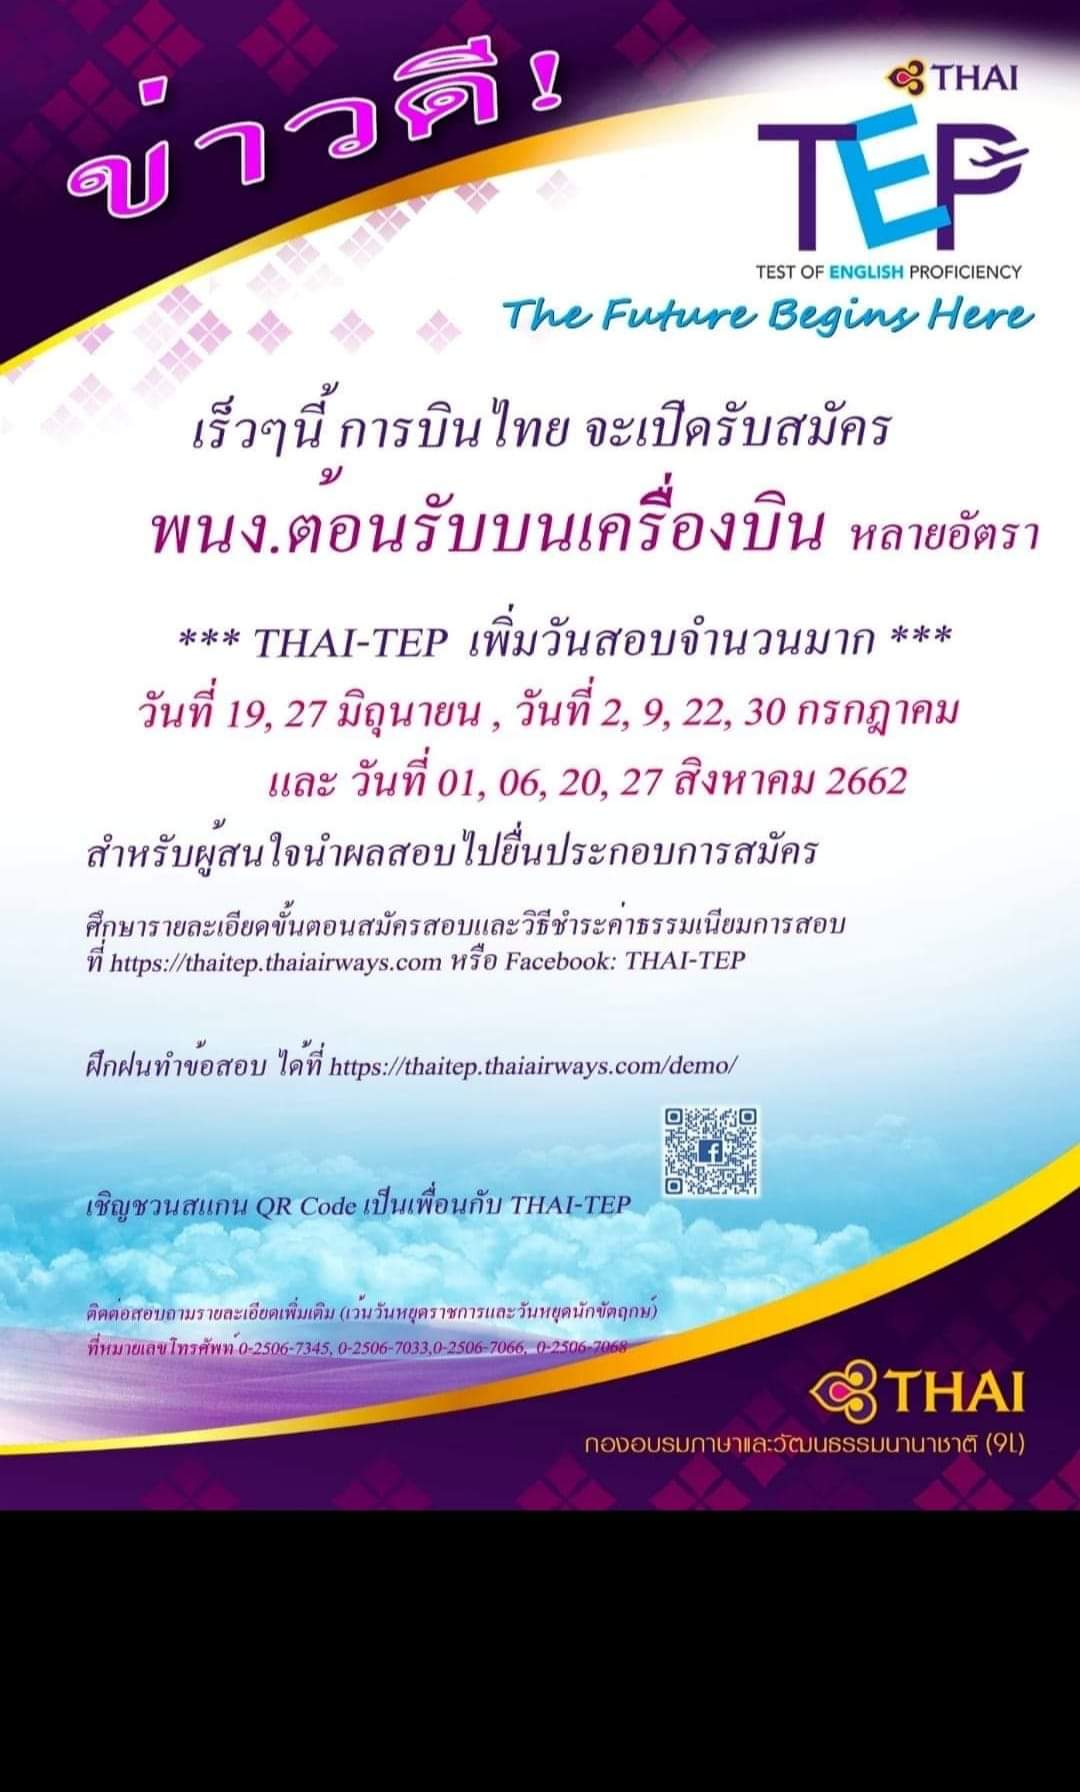 ข่าวดี สอบ THAI-TEP ก็สมัครแอร์การบินไทยได้ สอบถามรายละเอียดได้เลย